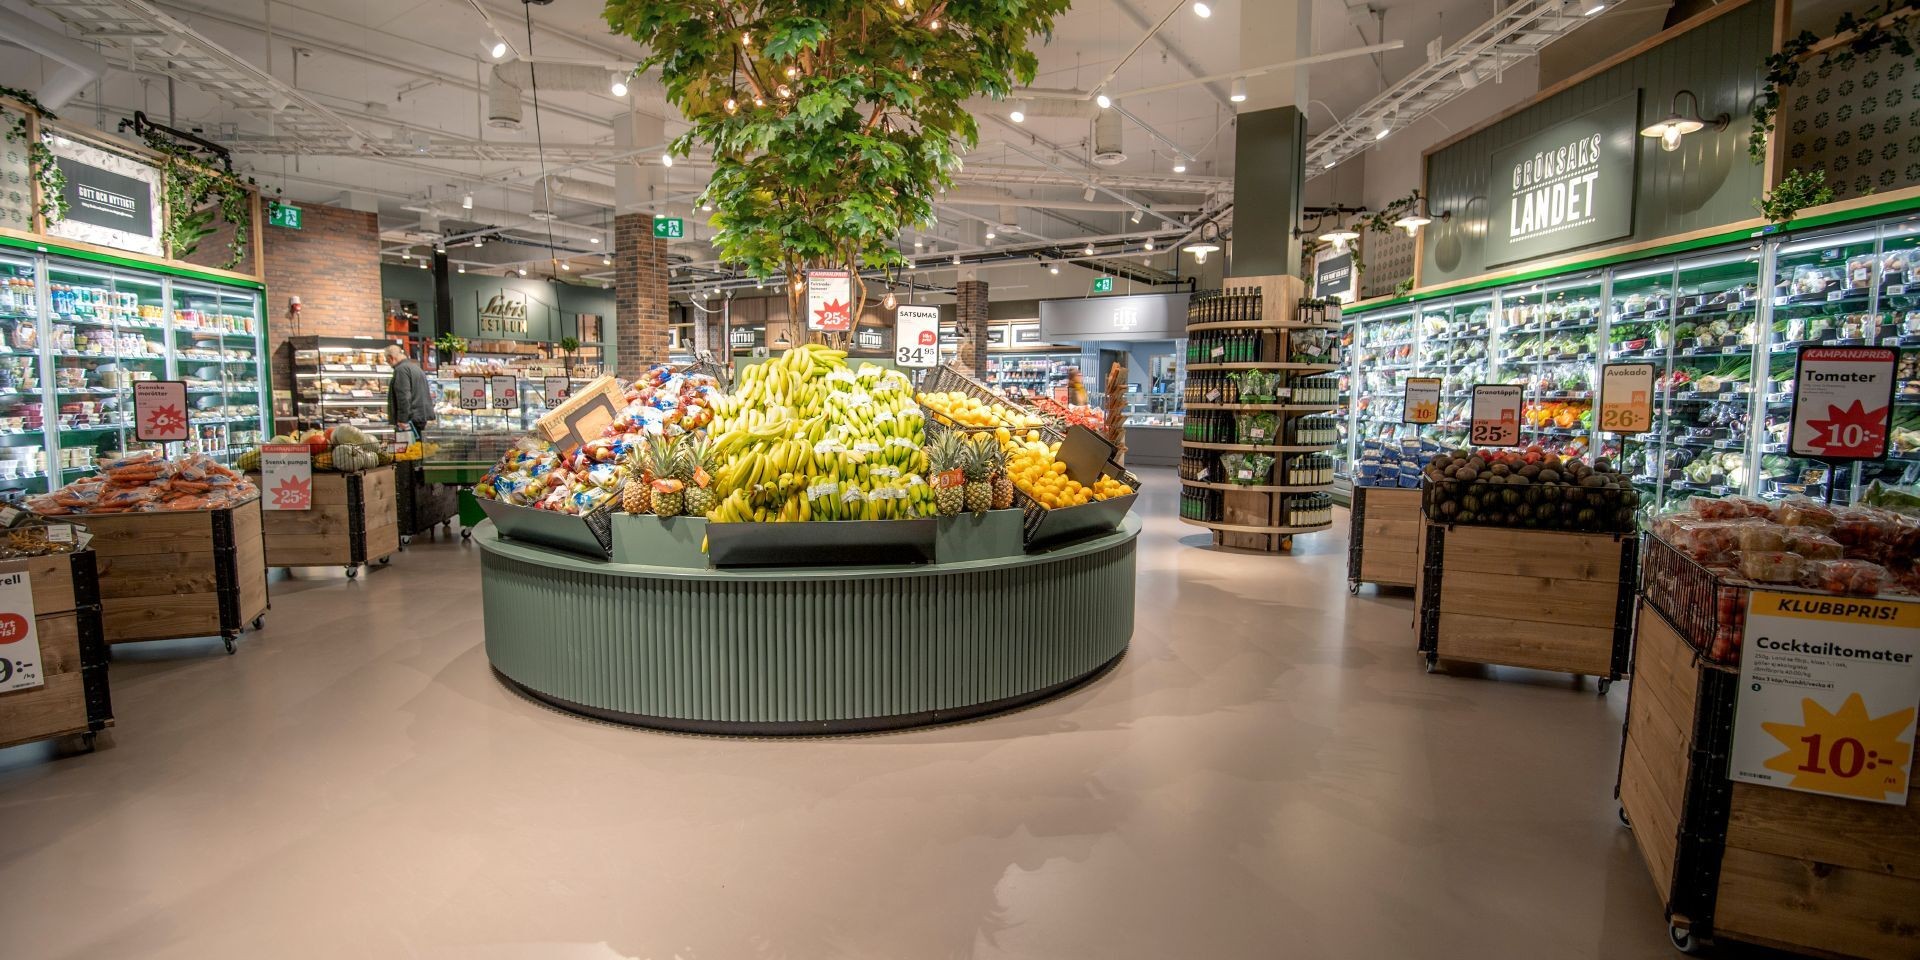 W sieci handlowej Hemköp zrównoważone zakupy zaczynają się od powłoki podłogowej przyjaznej środowisku